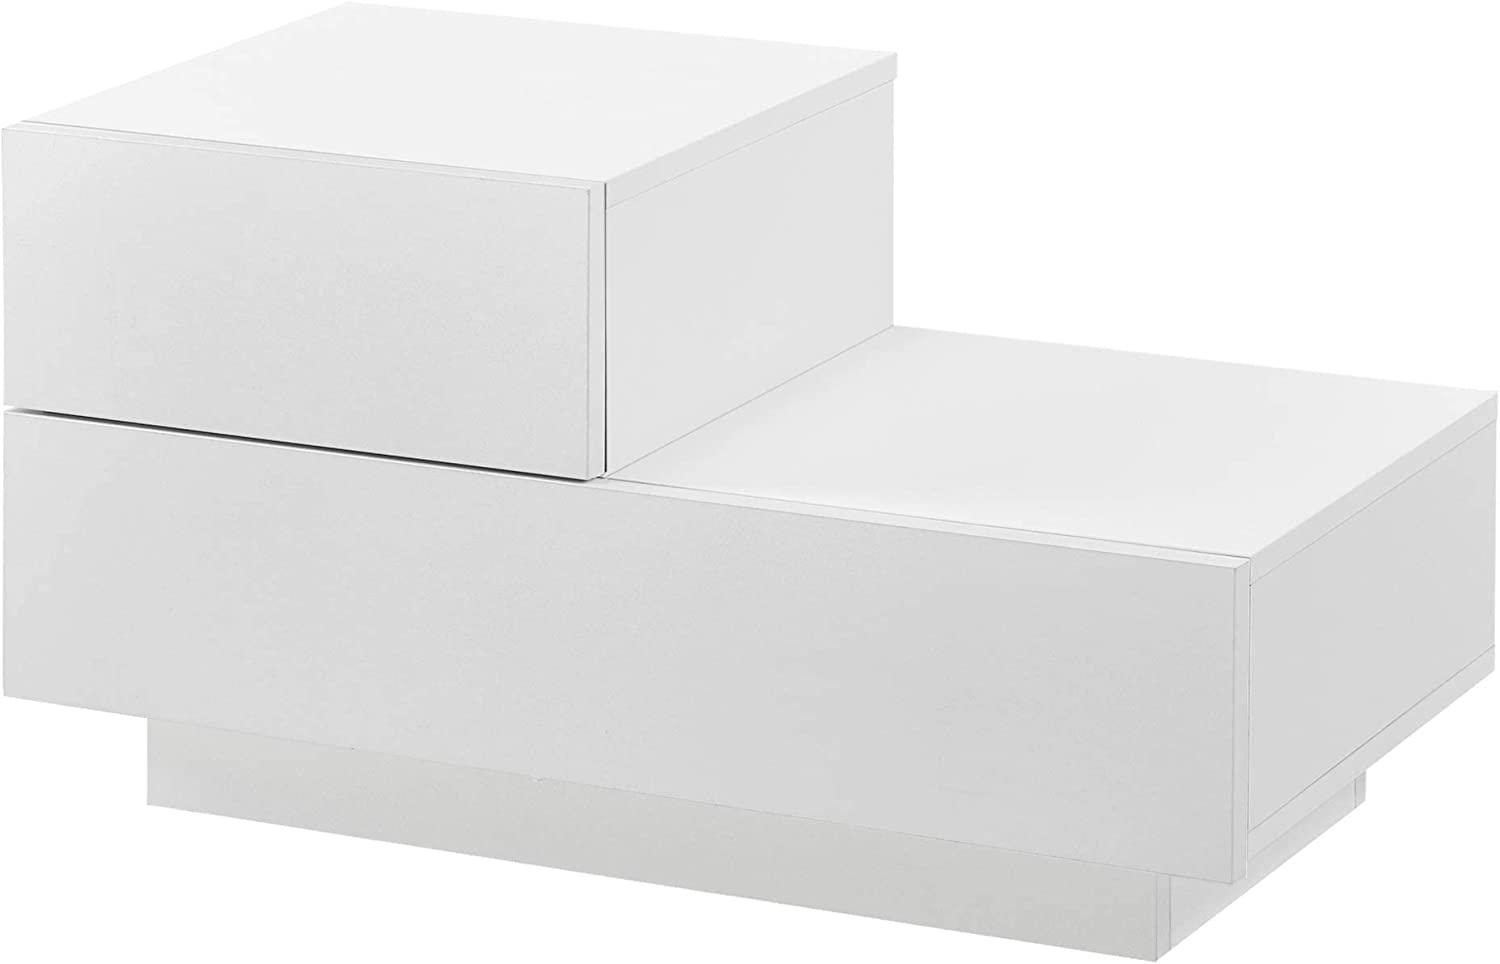 Nachttisch Sebokeng 38x70x35 cm mit Schublade oben links Weiß Matt en. casa Bild 1